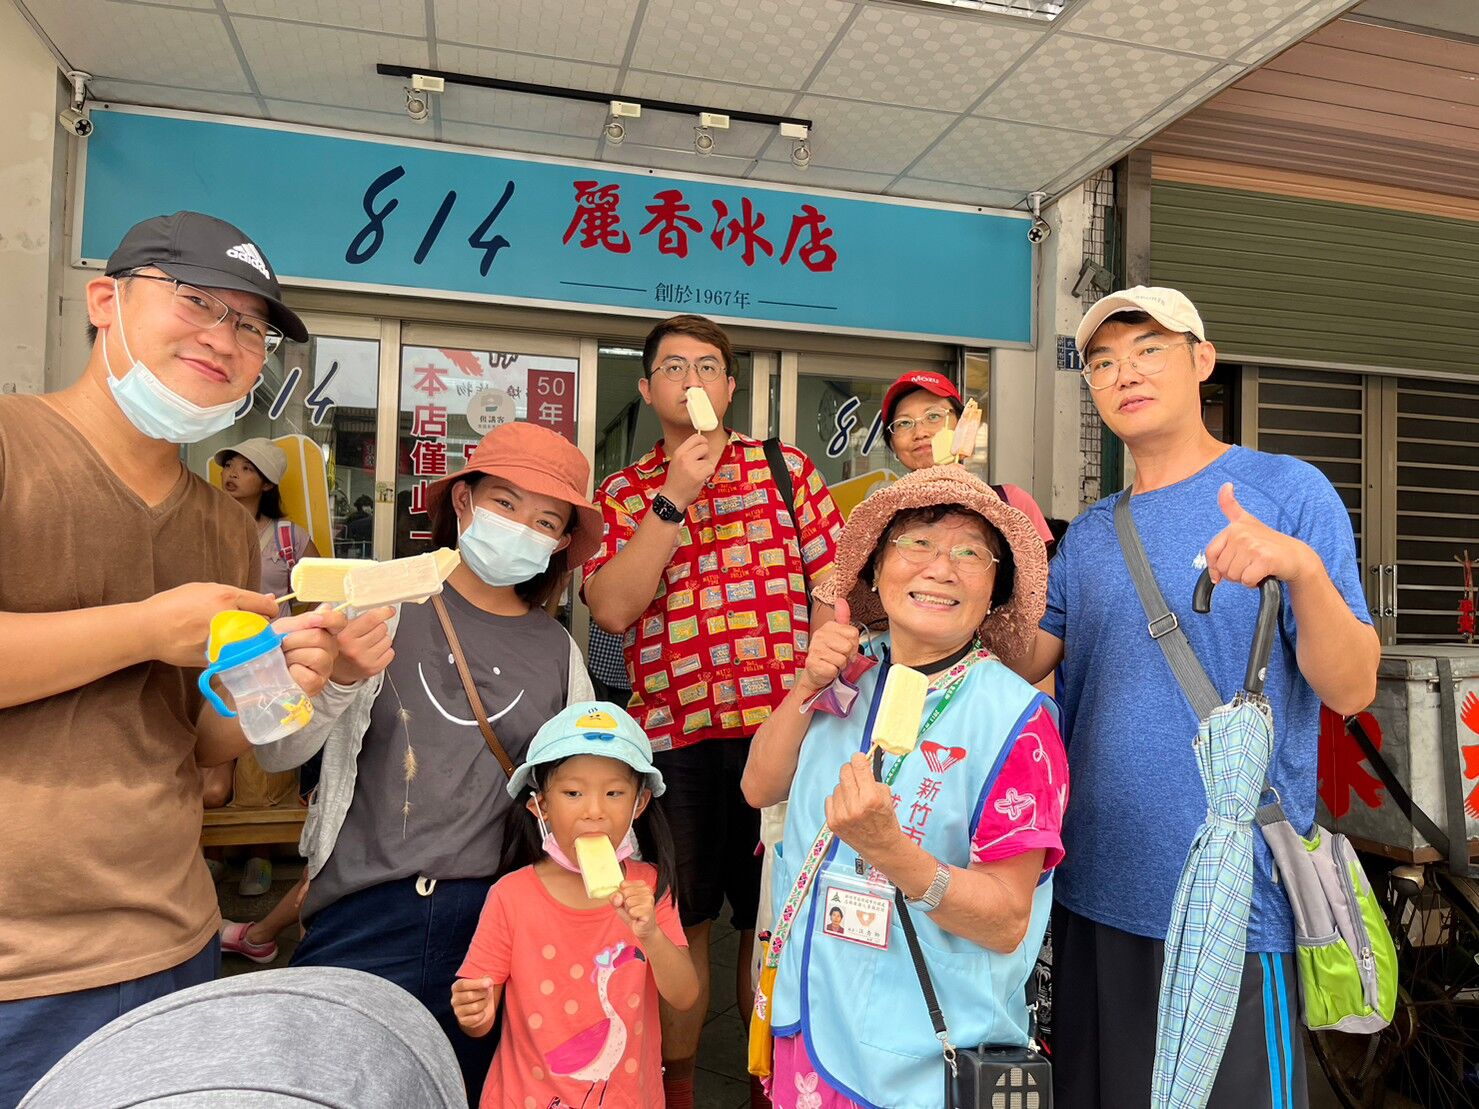 竹市舊城假日小旅行贈送「814麗香冰店」冰棒消暑。